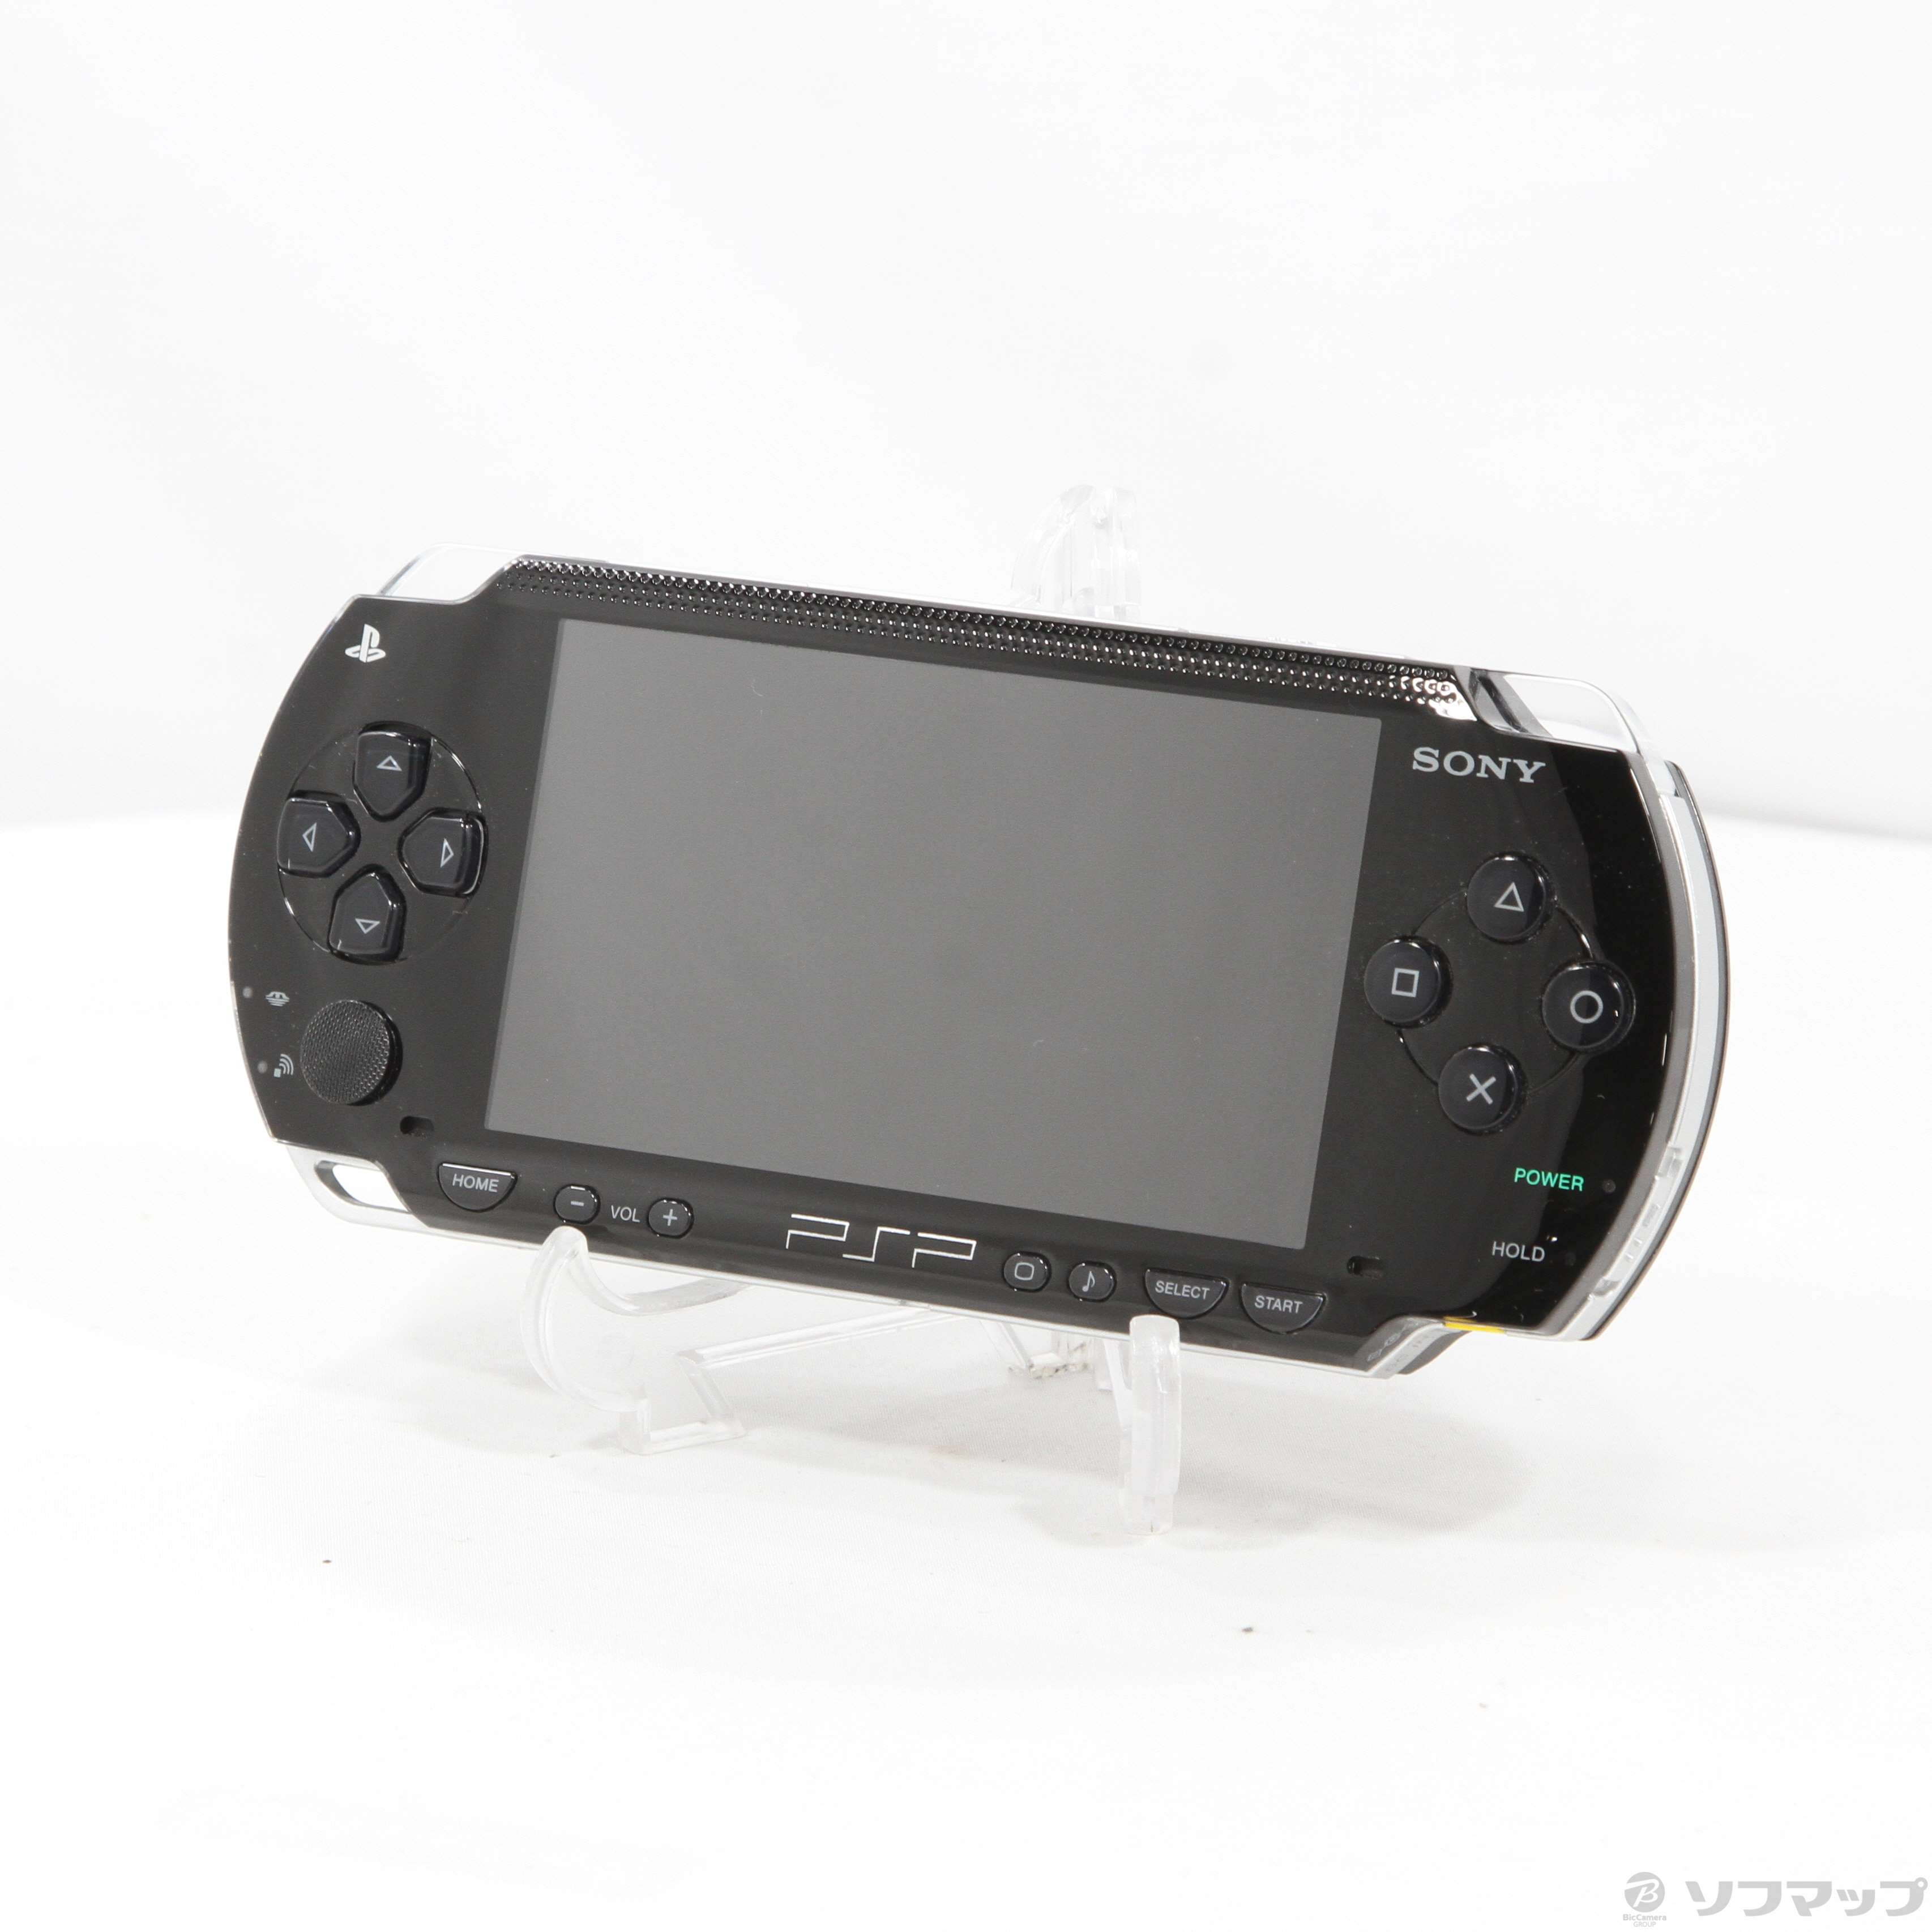 バリューパック PSP-1000K PSP